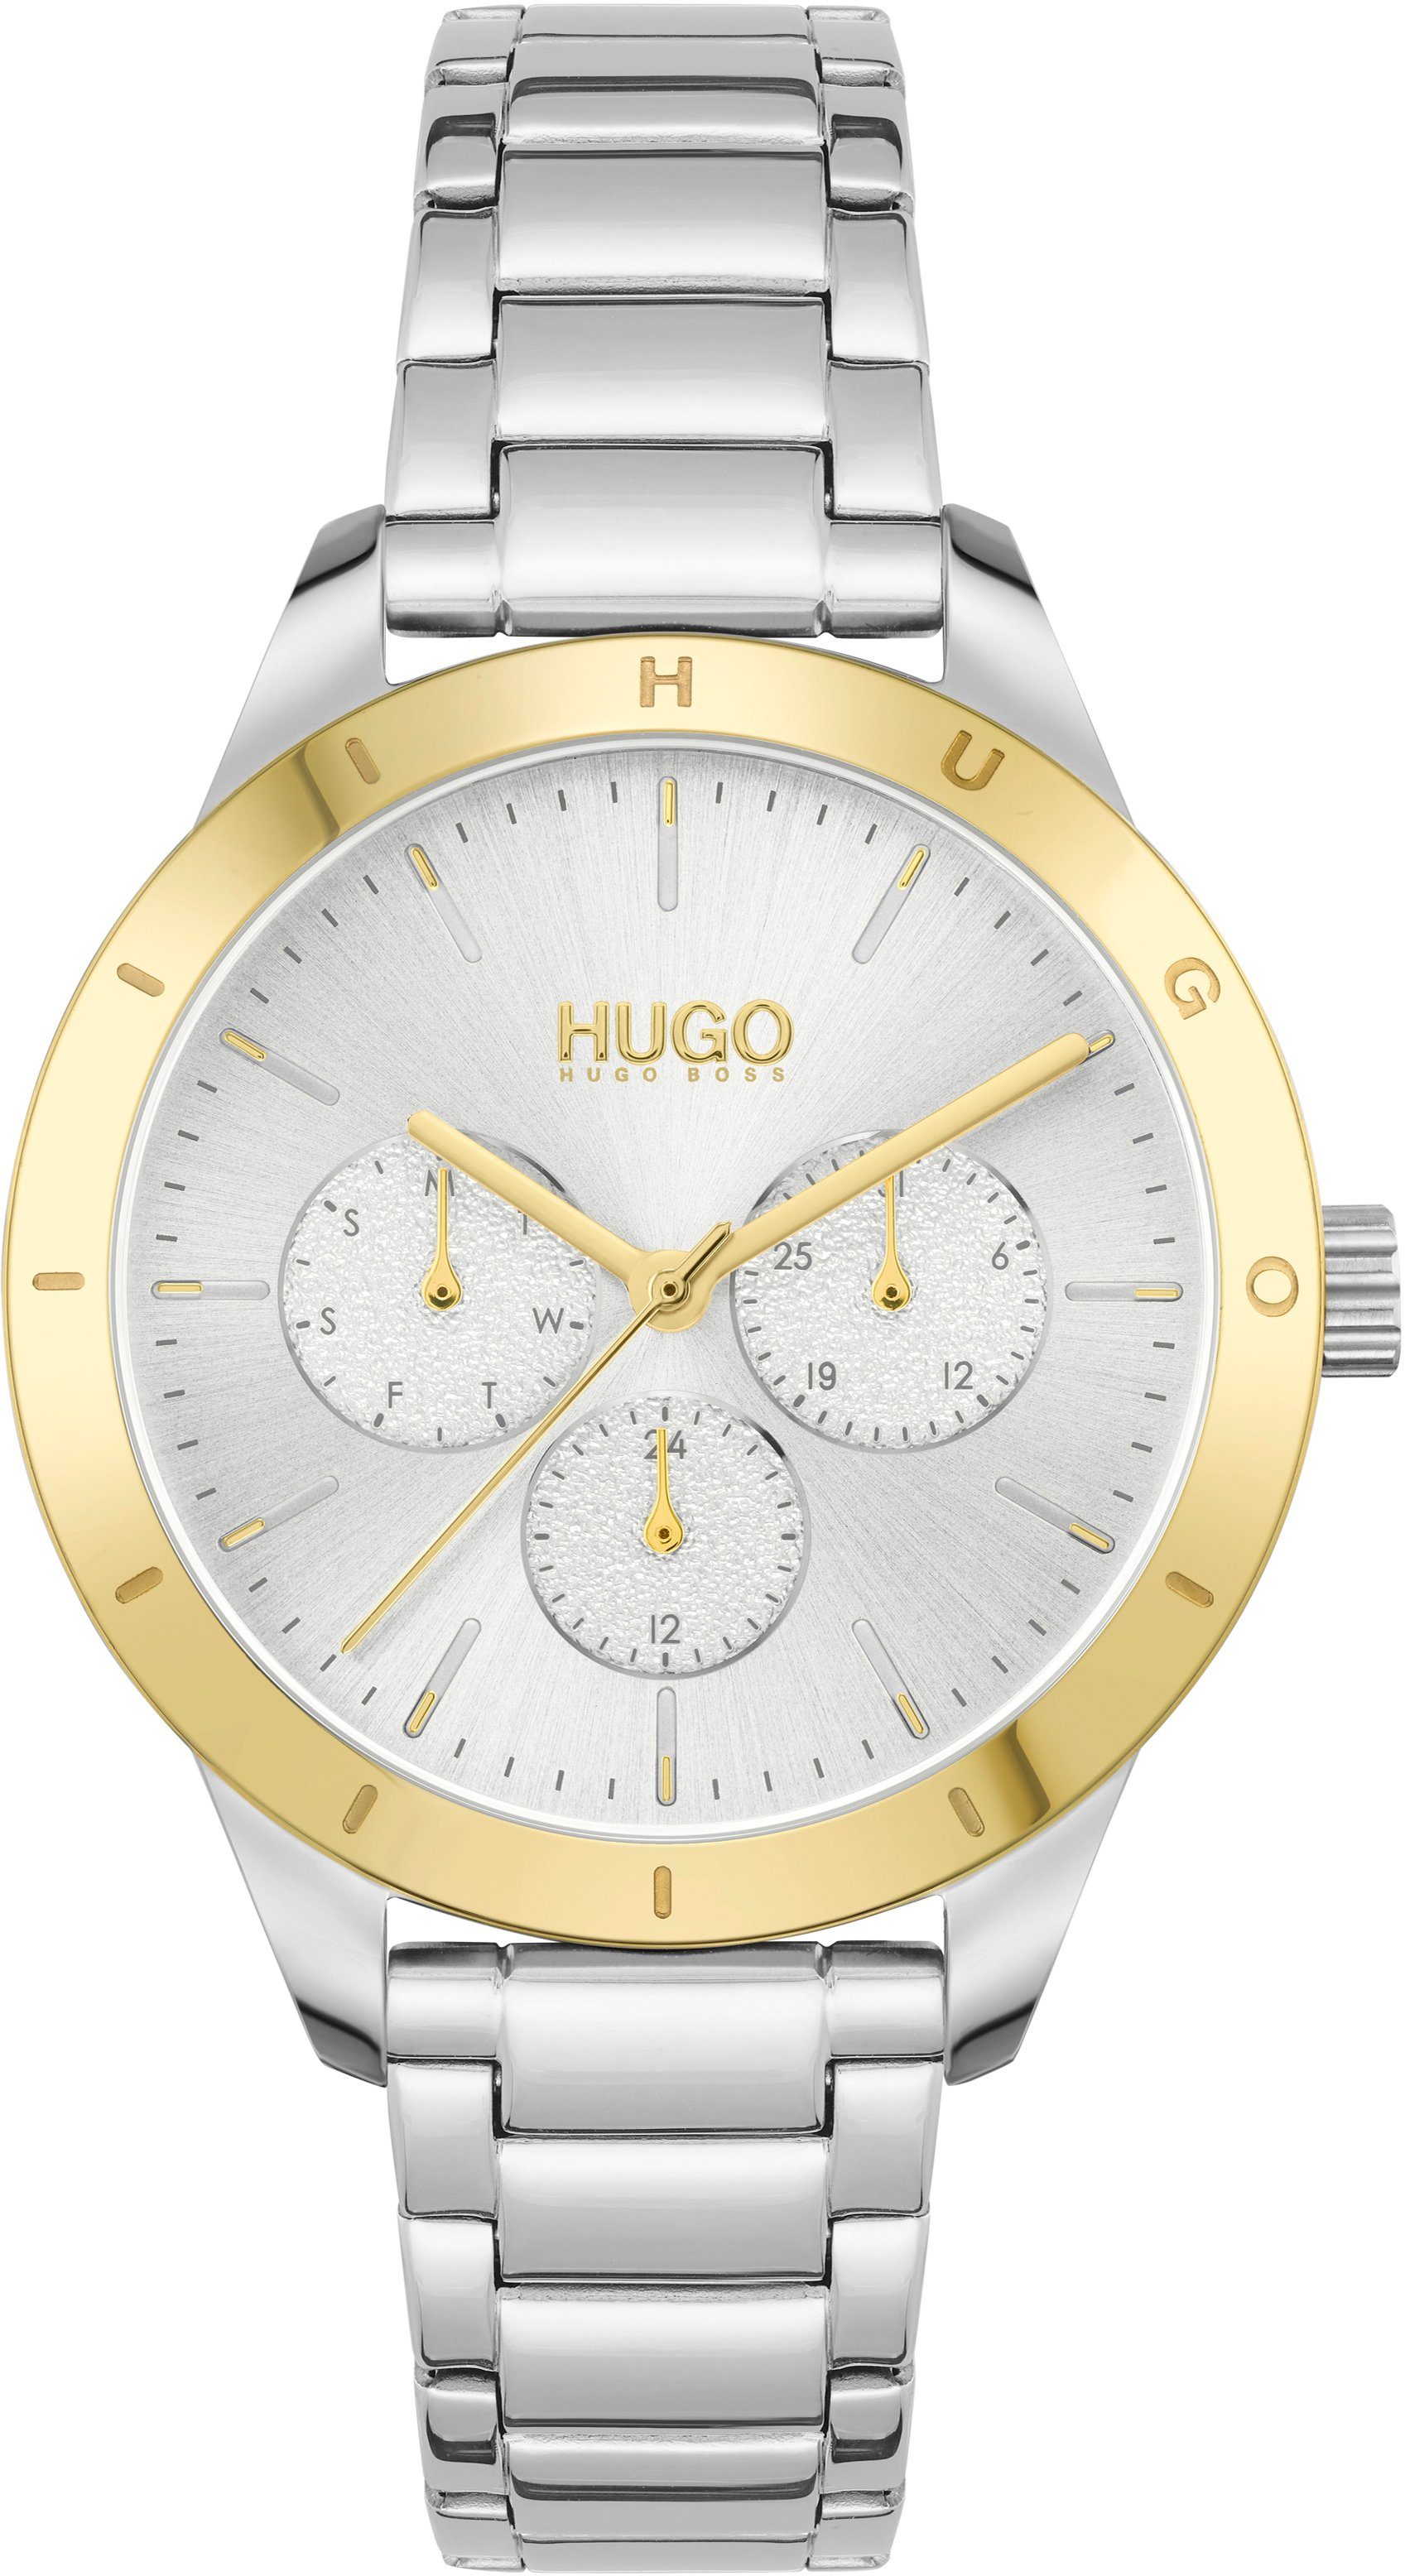 HUGO Multifunktionsuhr #FRIEND, 1540090, Quarzuhr, Armbanduhr, Damenuhr, Datum, 12/24-Stunden-Anzeige